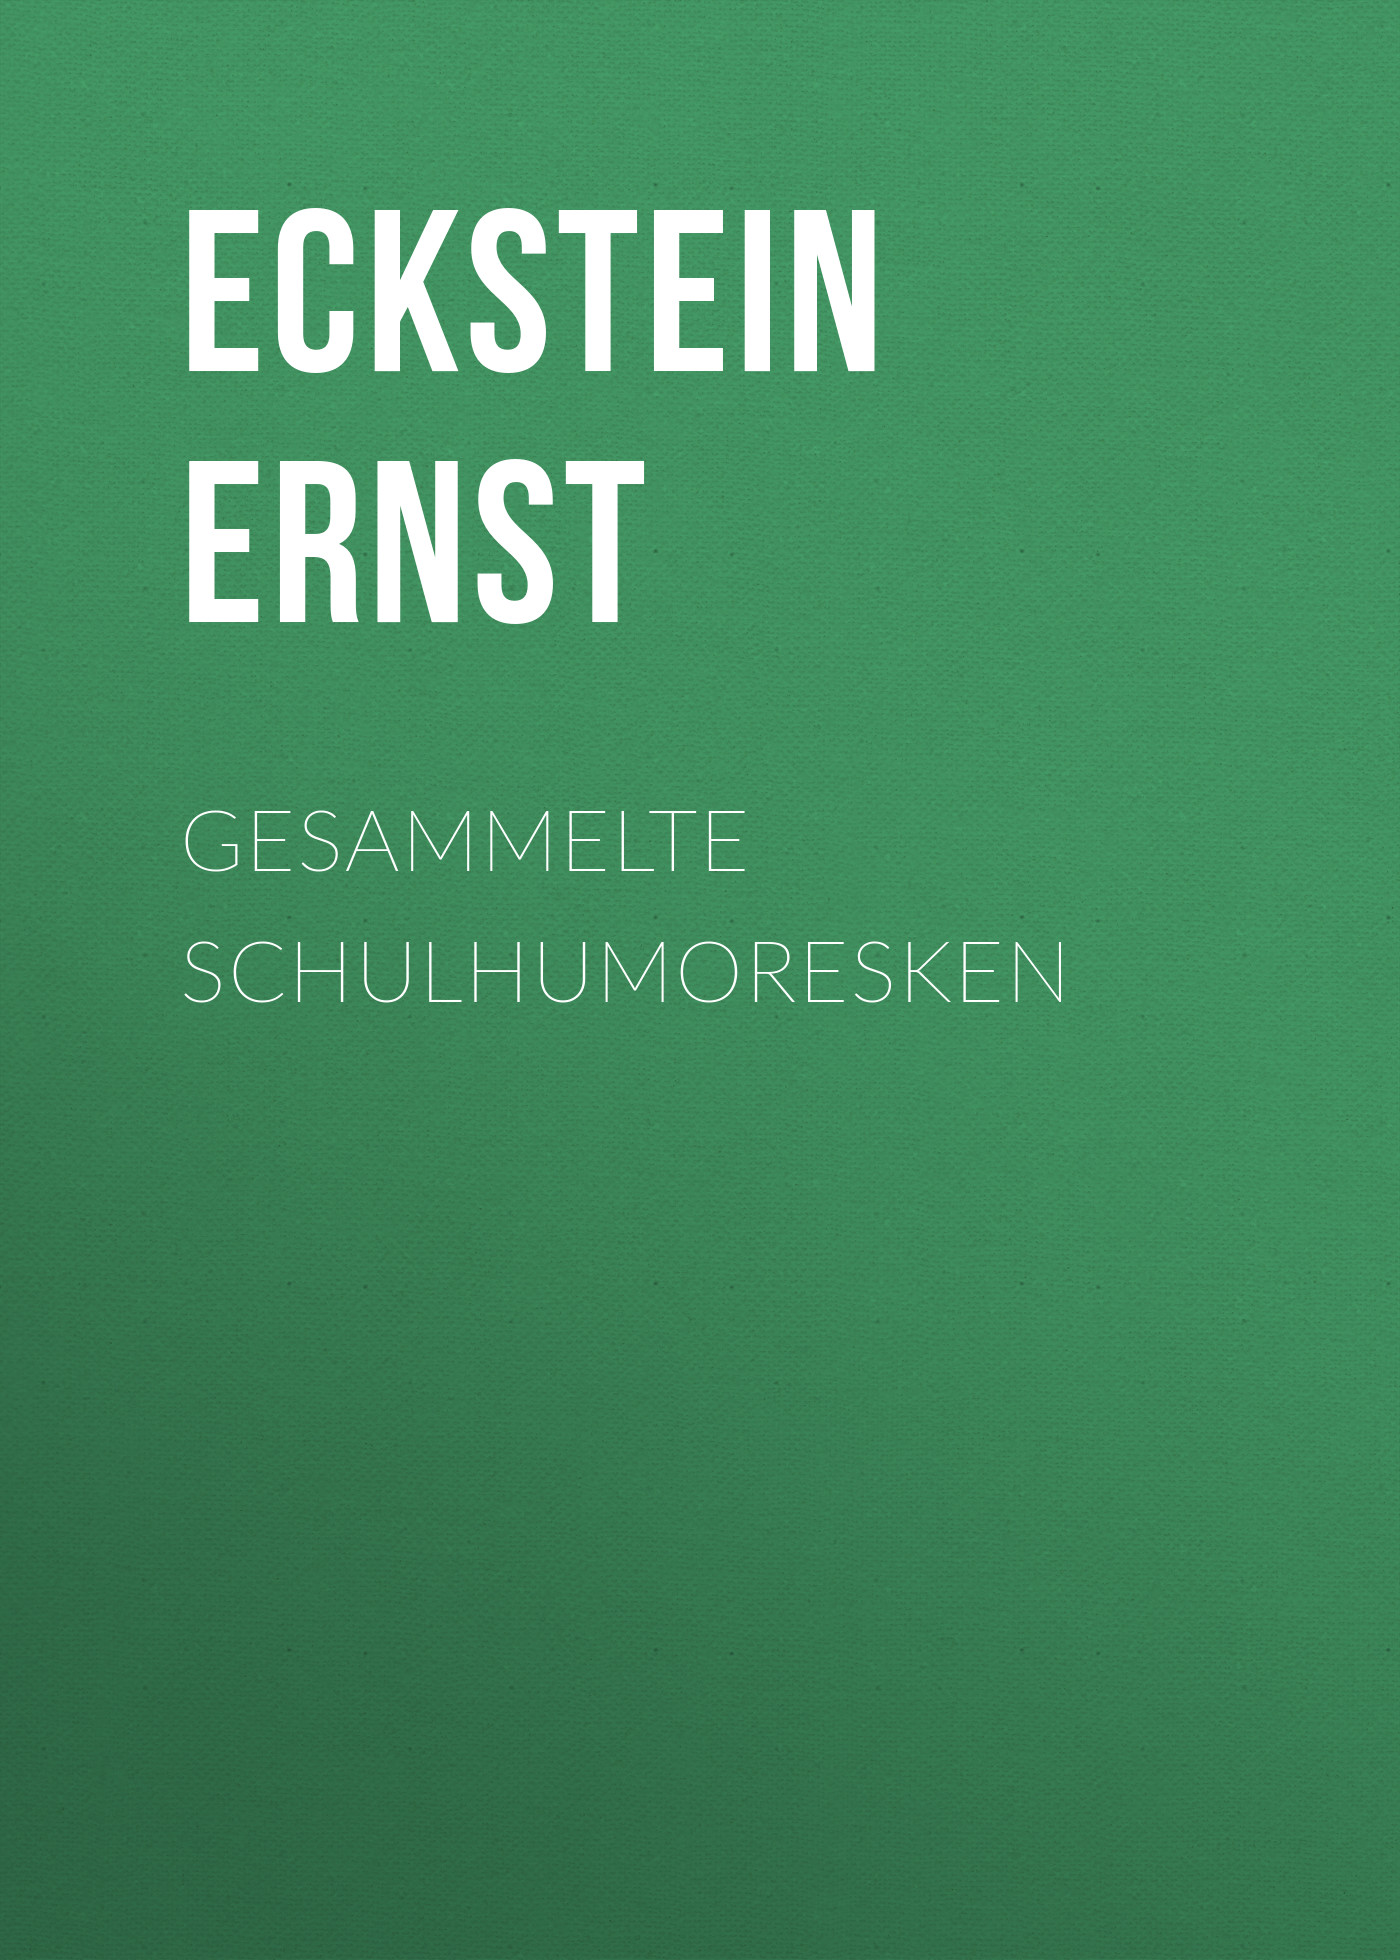 Книга Gesammelte Schulhumoresken из серии , созданная Ernst Eckstein, может относится к жанру Зарубежная старинная литература, Зарубежная классика. Стоимость электронной книги Gesammelte Schulhumoresken с идентификатором 24713889 составляет 0 руб.